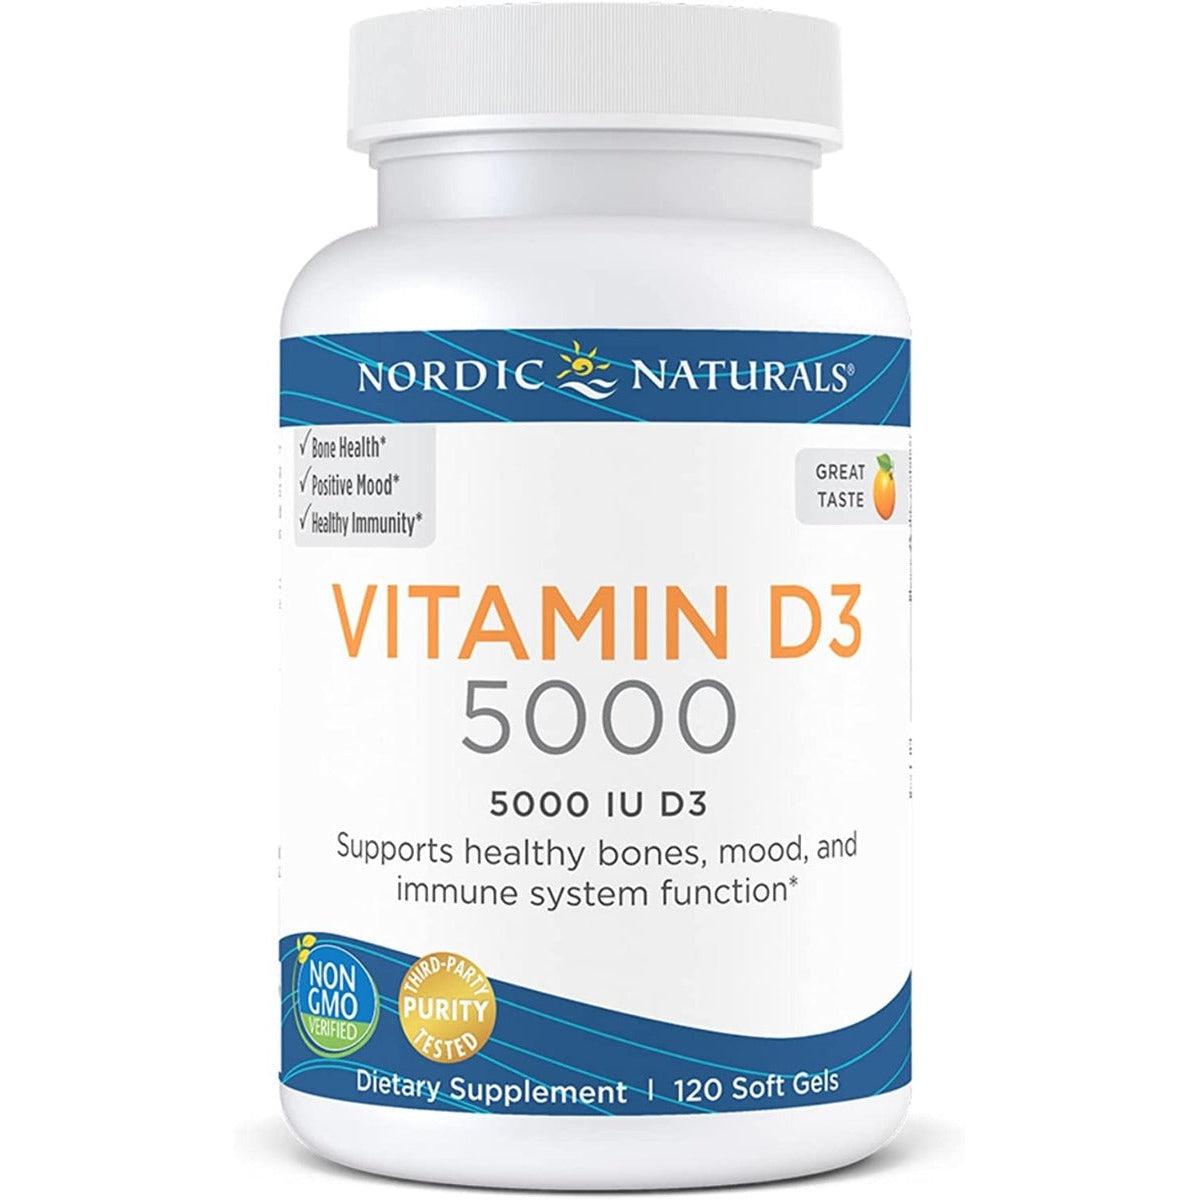 Nordic Naturals Vitamin D3 5000 IU 120 Softgel